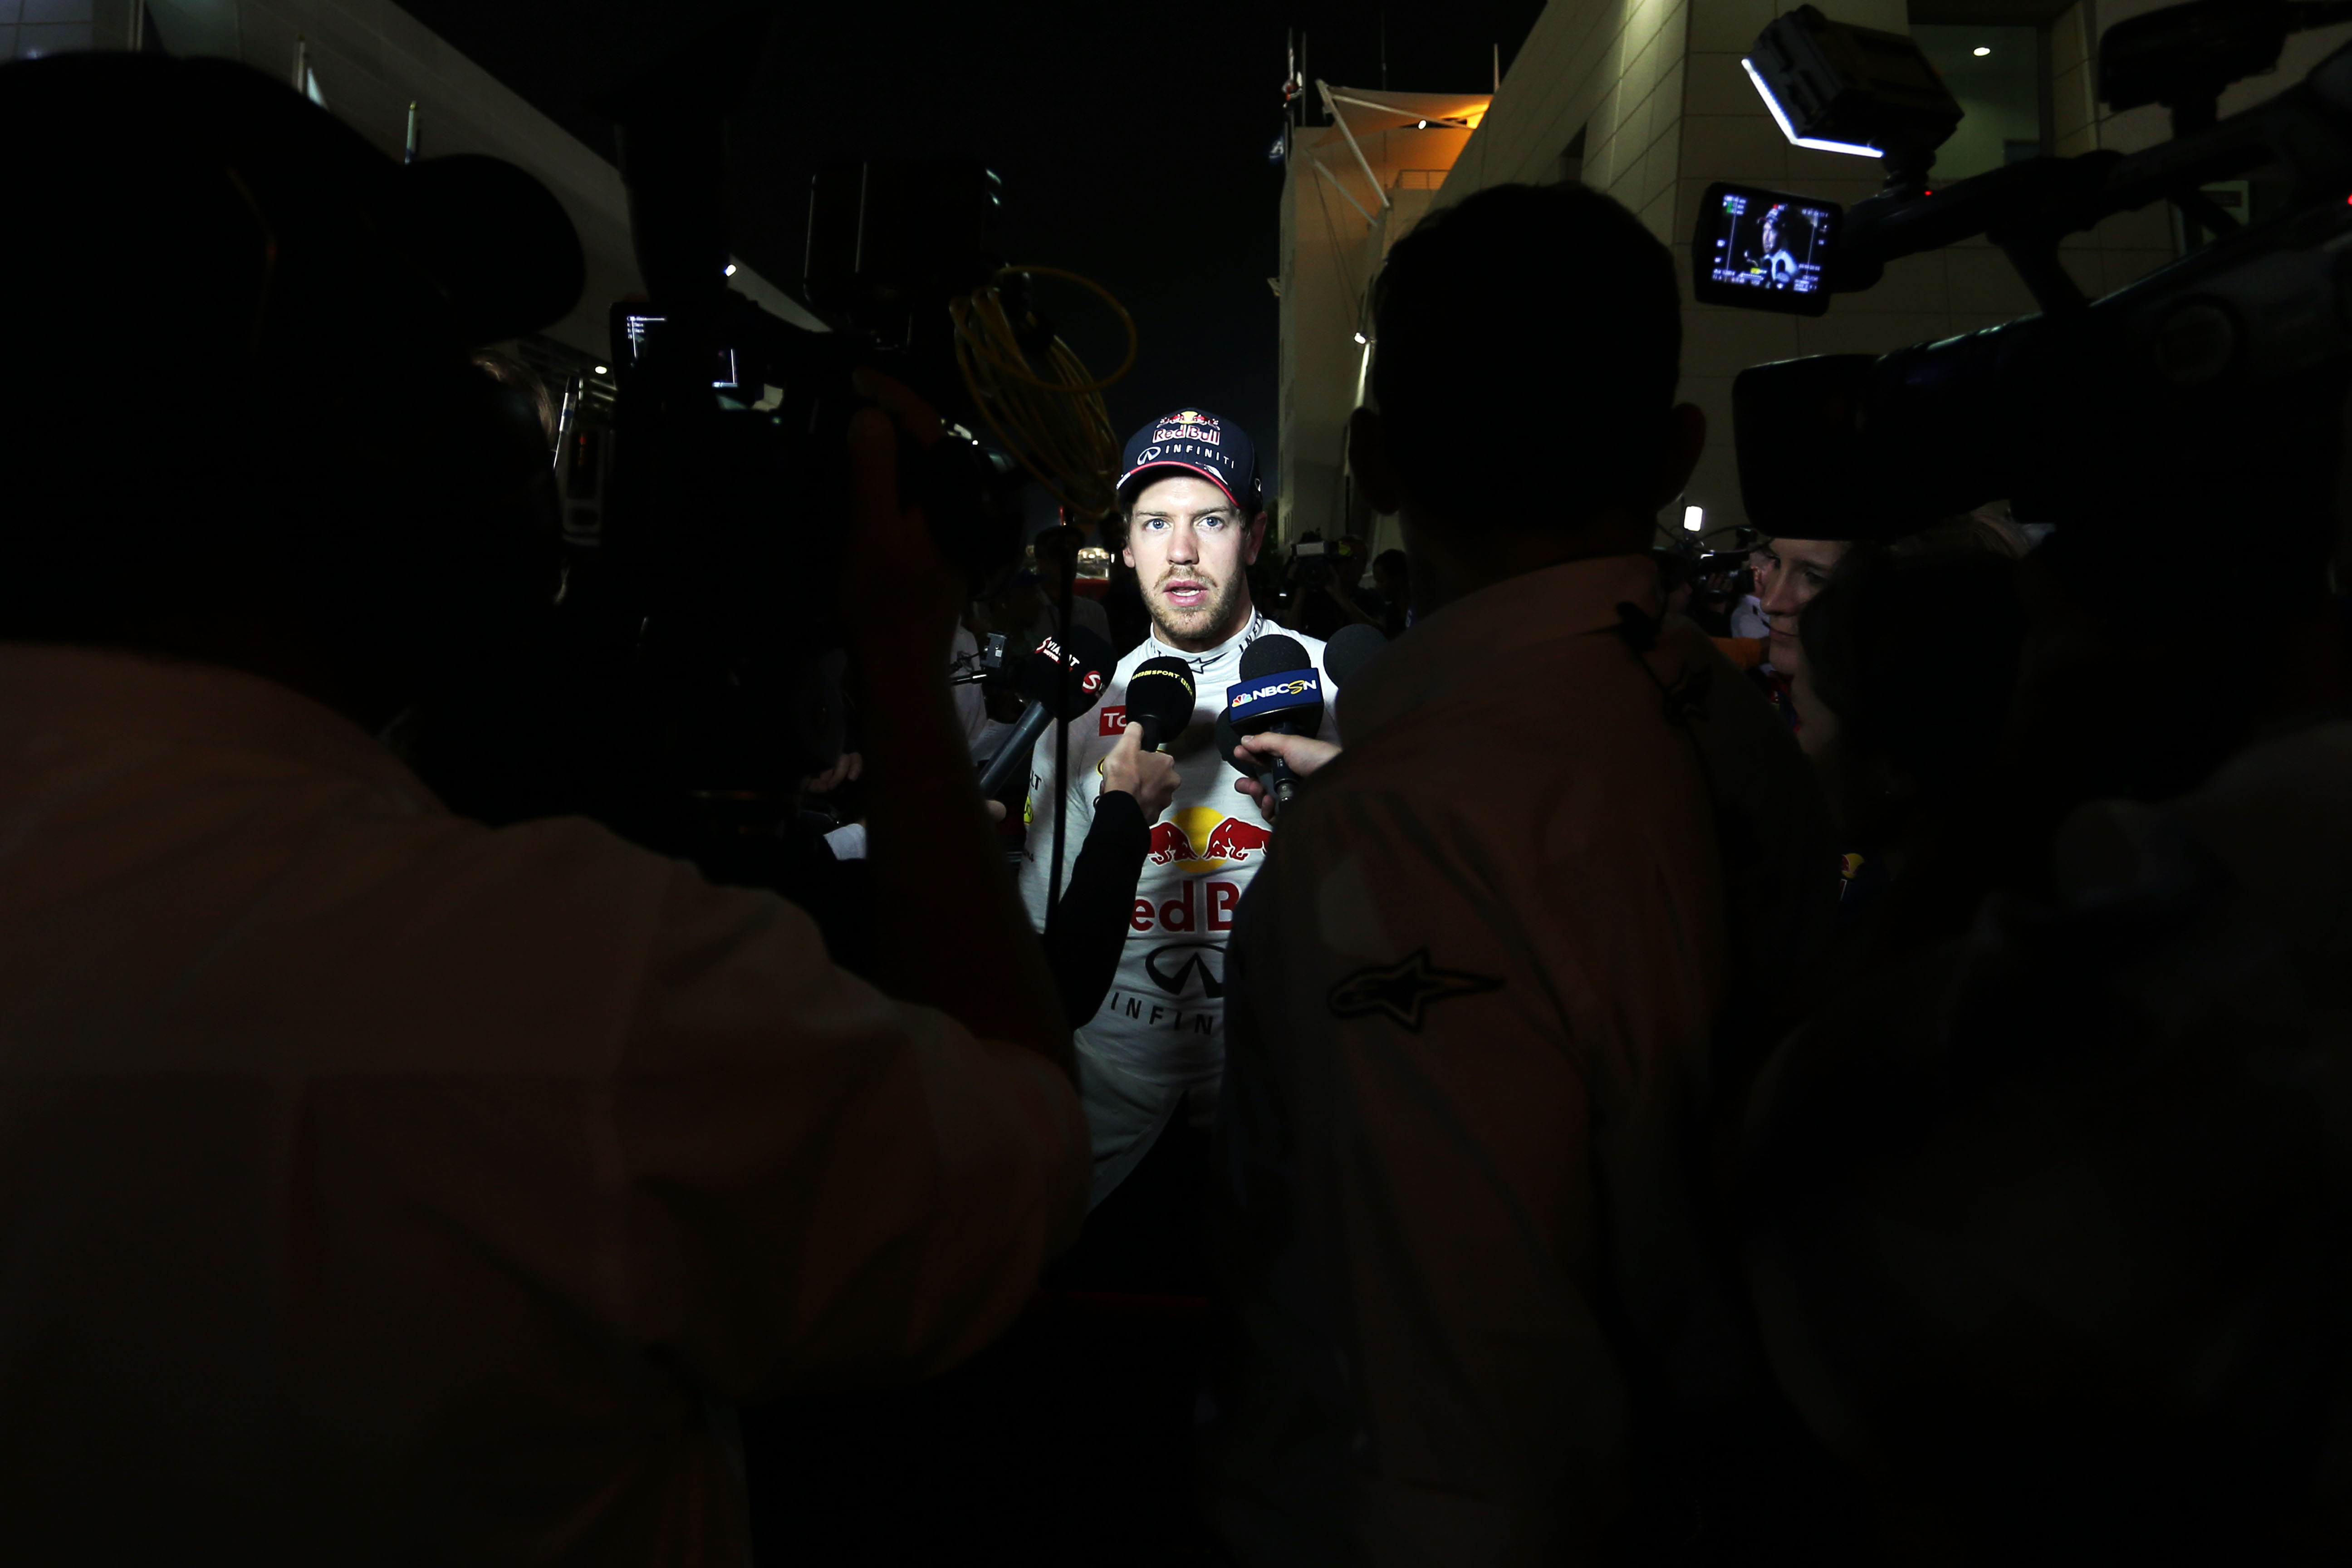 Weblog: Hoe goed is Vettel eigenlijk?